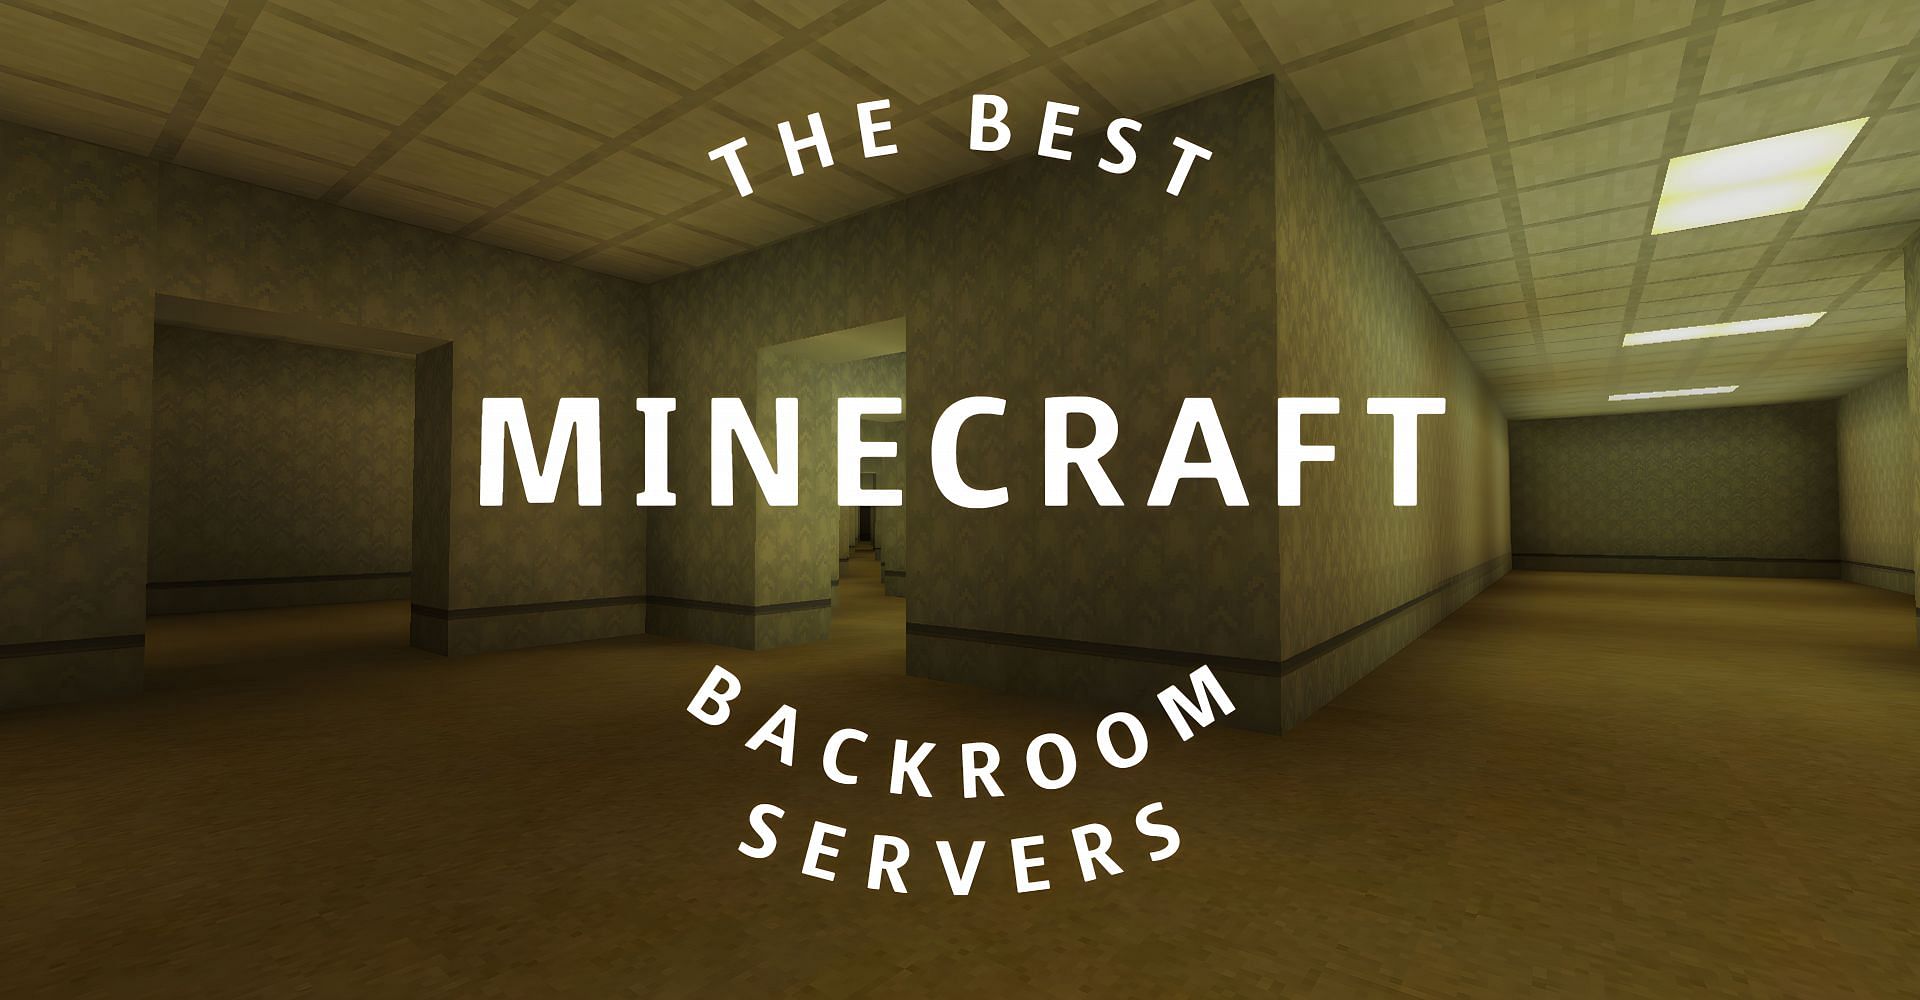 Minecraft backroom servers can be insane (Image via Sportskeeda)